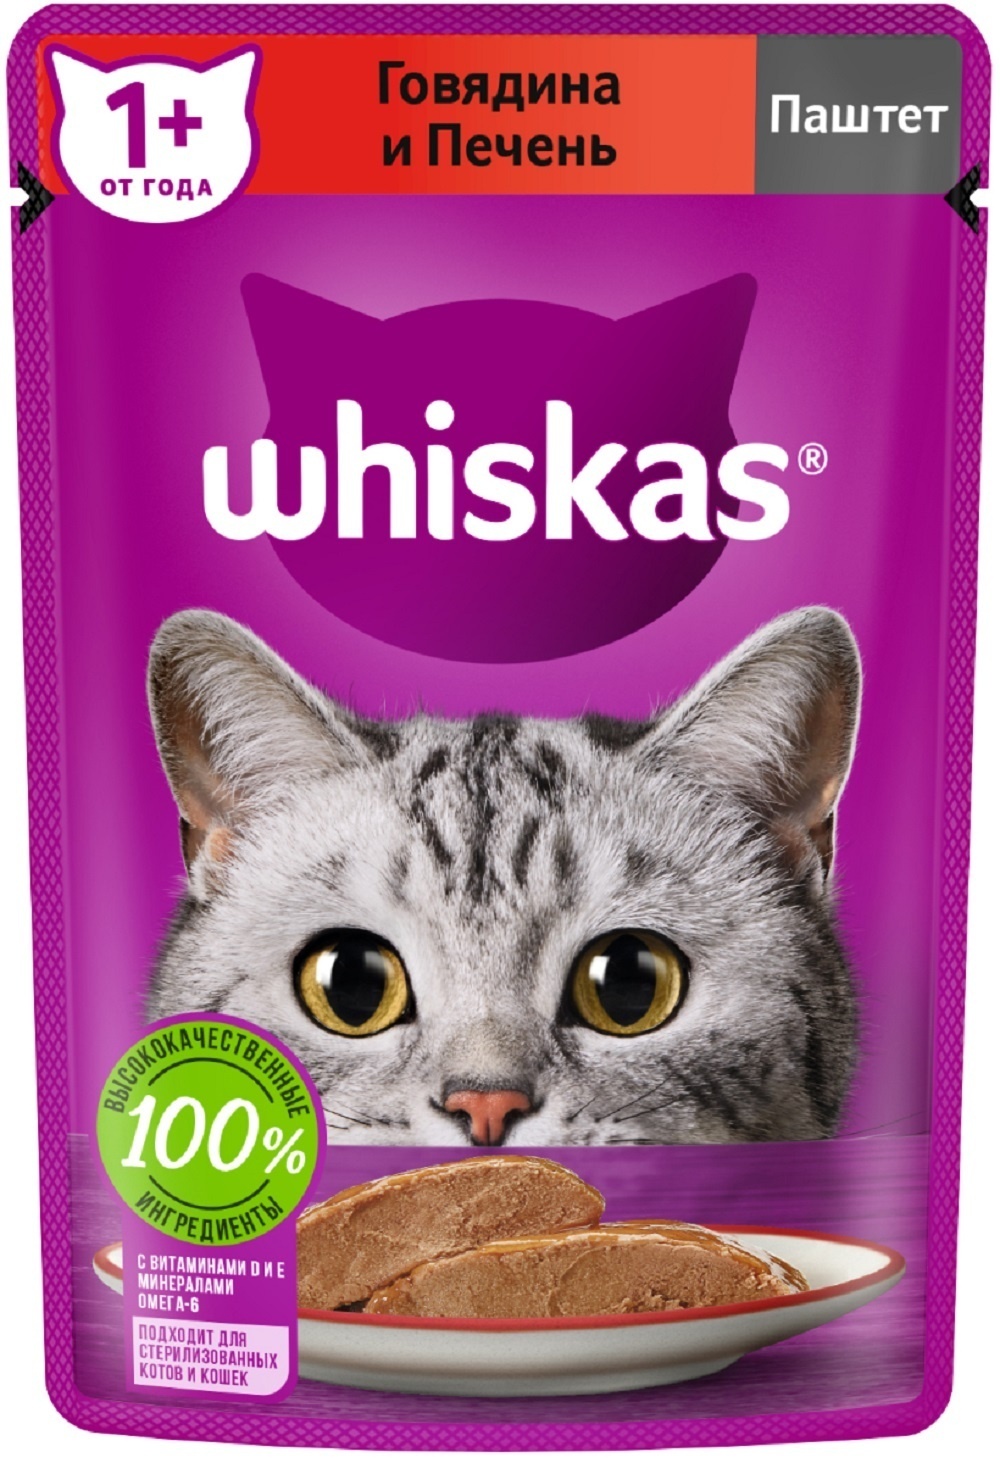 Whiskas Whiskas влажный корм для кошек, паштет из говядины с печенью (75 г) whiskas whiskas влажный корм для кошек паштет из курицы с индейкой 75 г